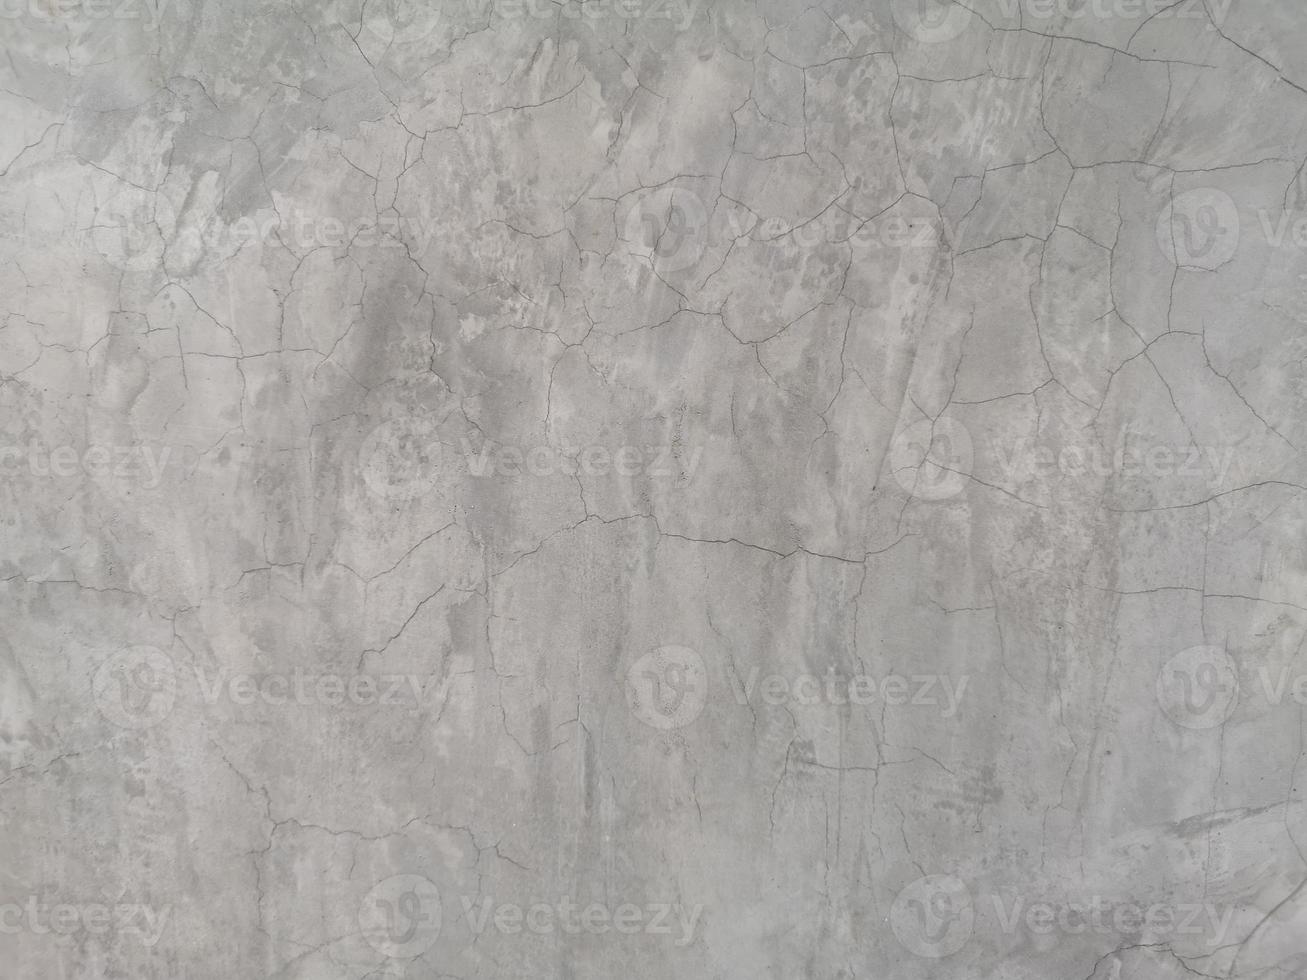 Grieta en la pared de cemento color gris pulido desnudo y textura de superficie lisa material de hormigón detalle de fondo vintage arquitecto construcción paredes de ladrillo enlucidas y pintadas foto